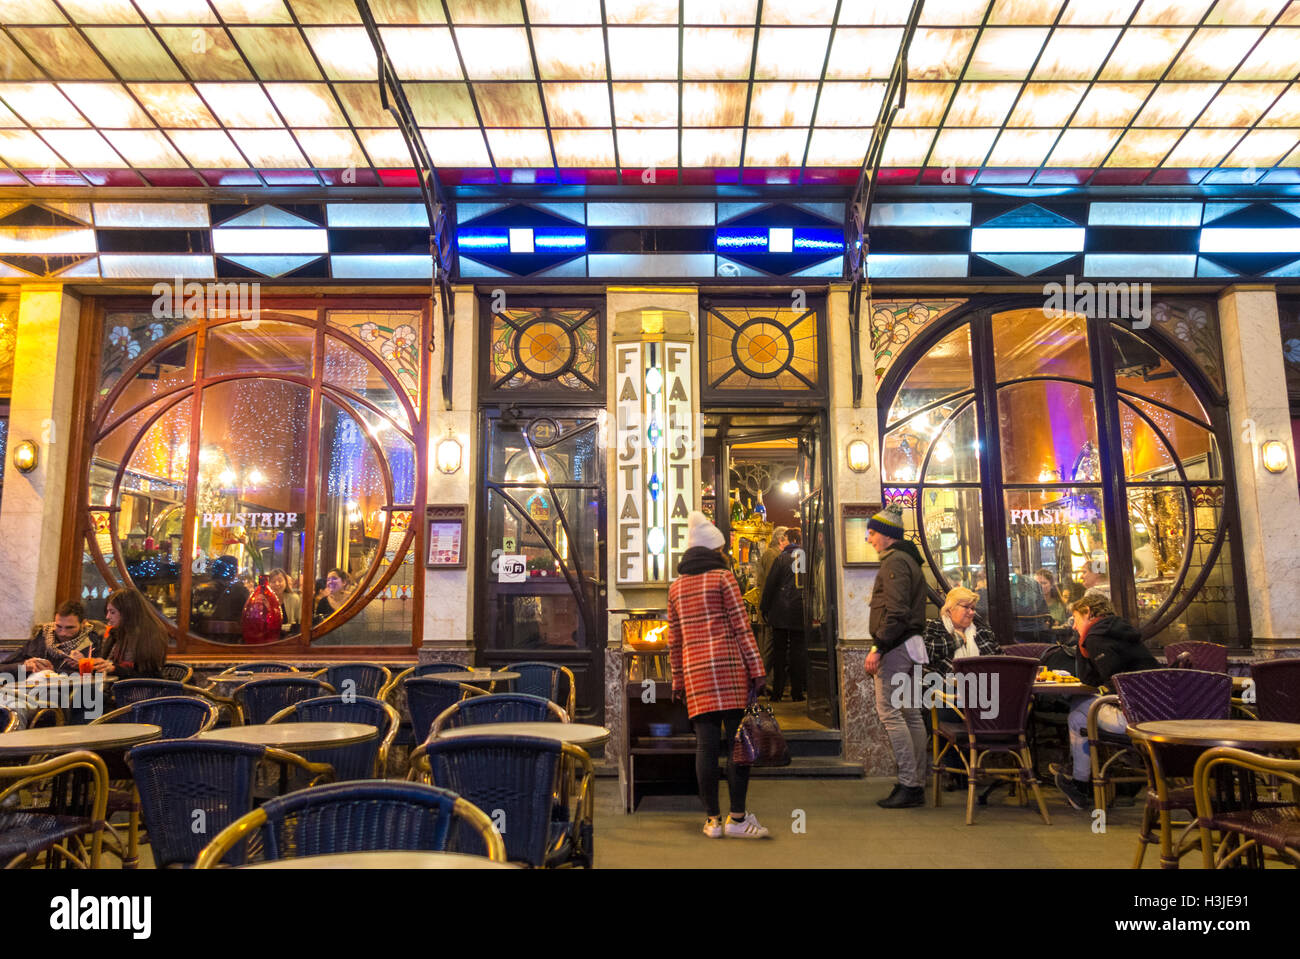 Bruxelles restaurant Le Falstaff bar café pub. Célèbre pub populaire avec l'intérieur de style Art Nouveau. Banque D'Images